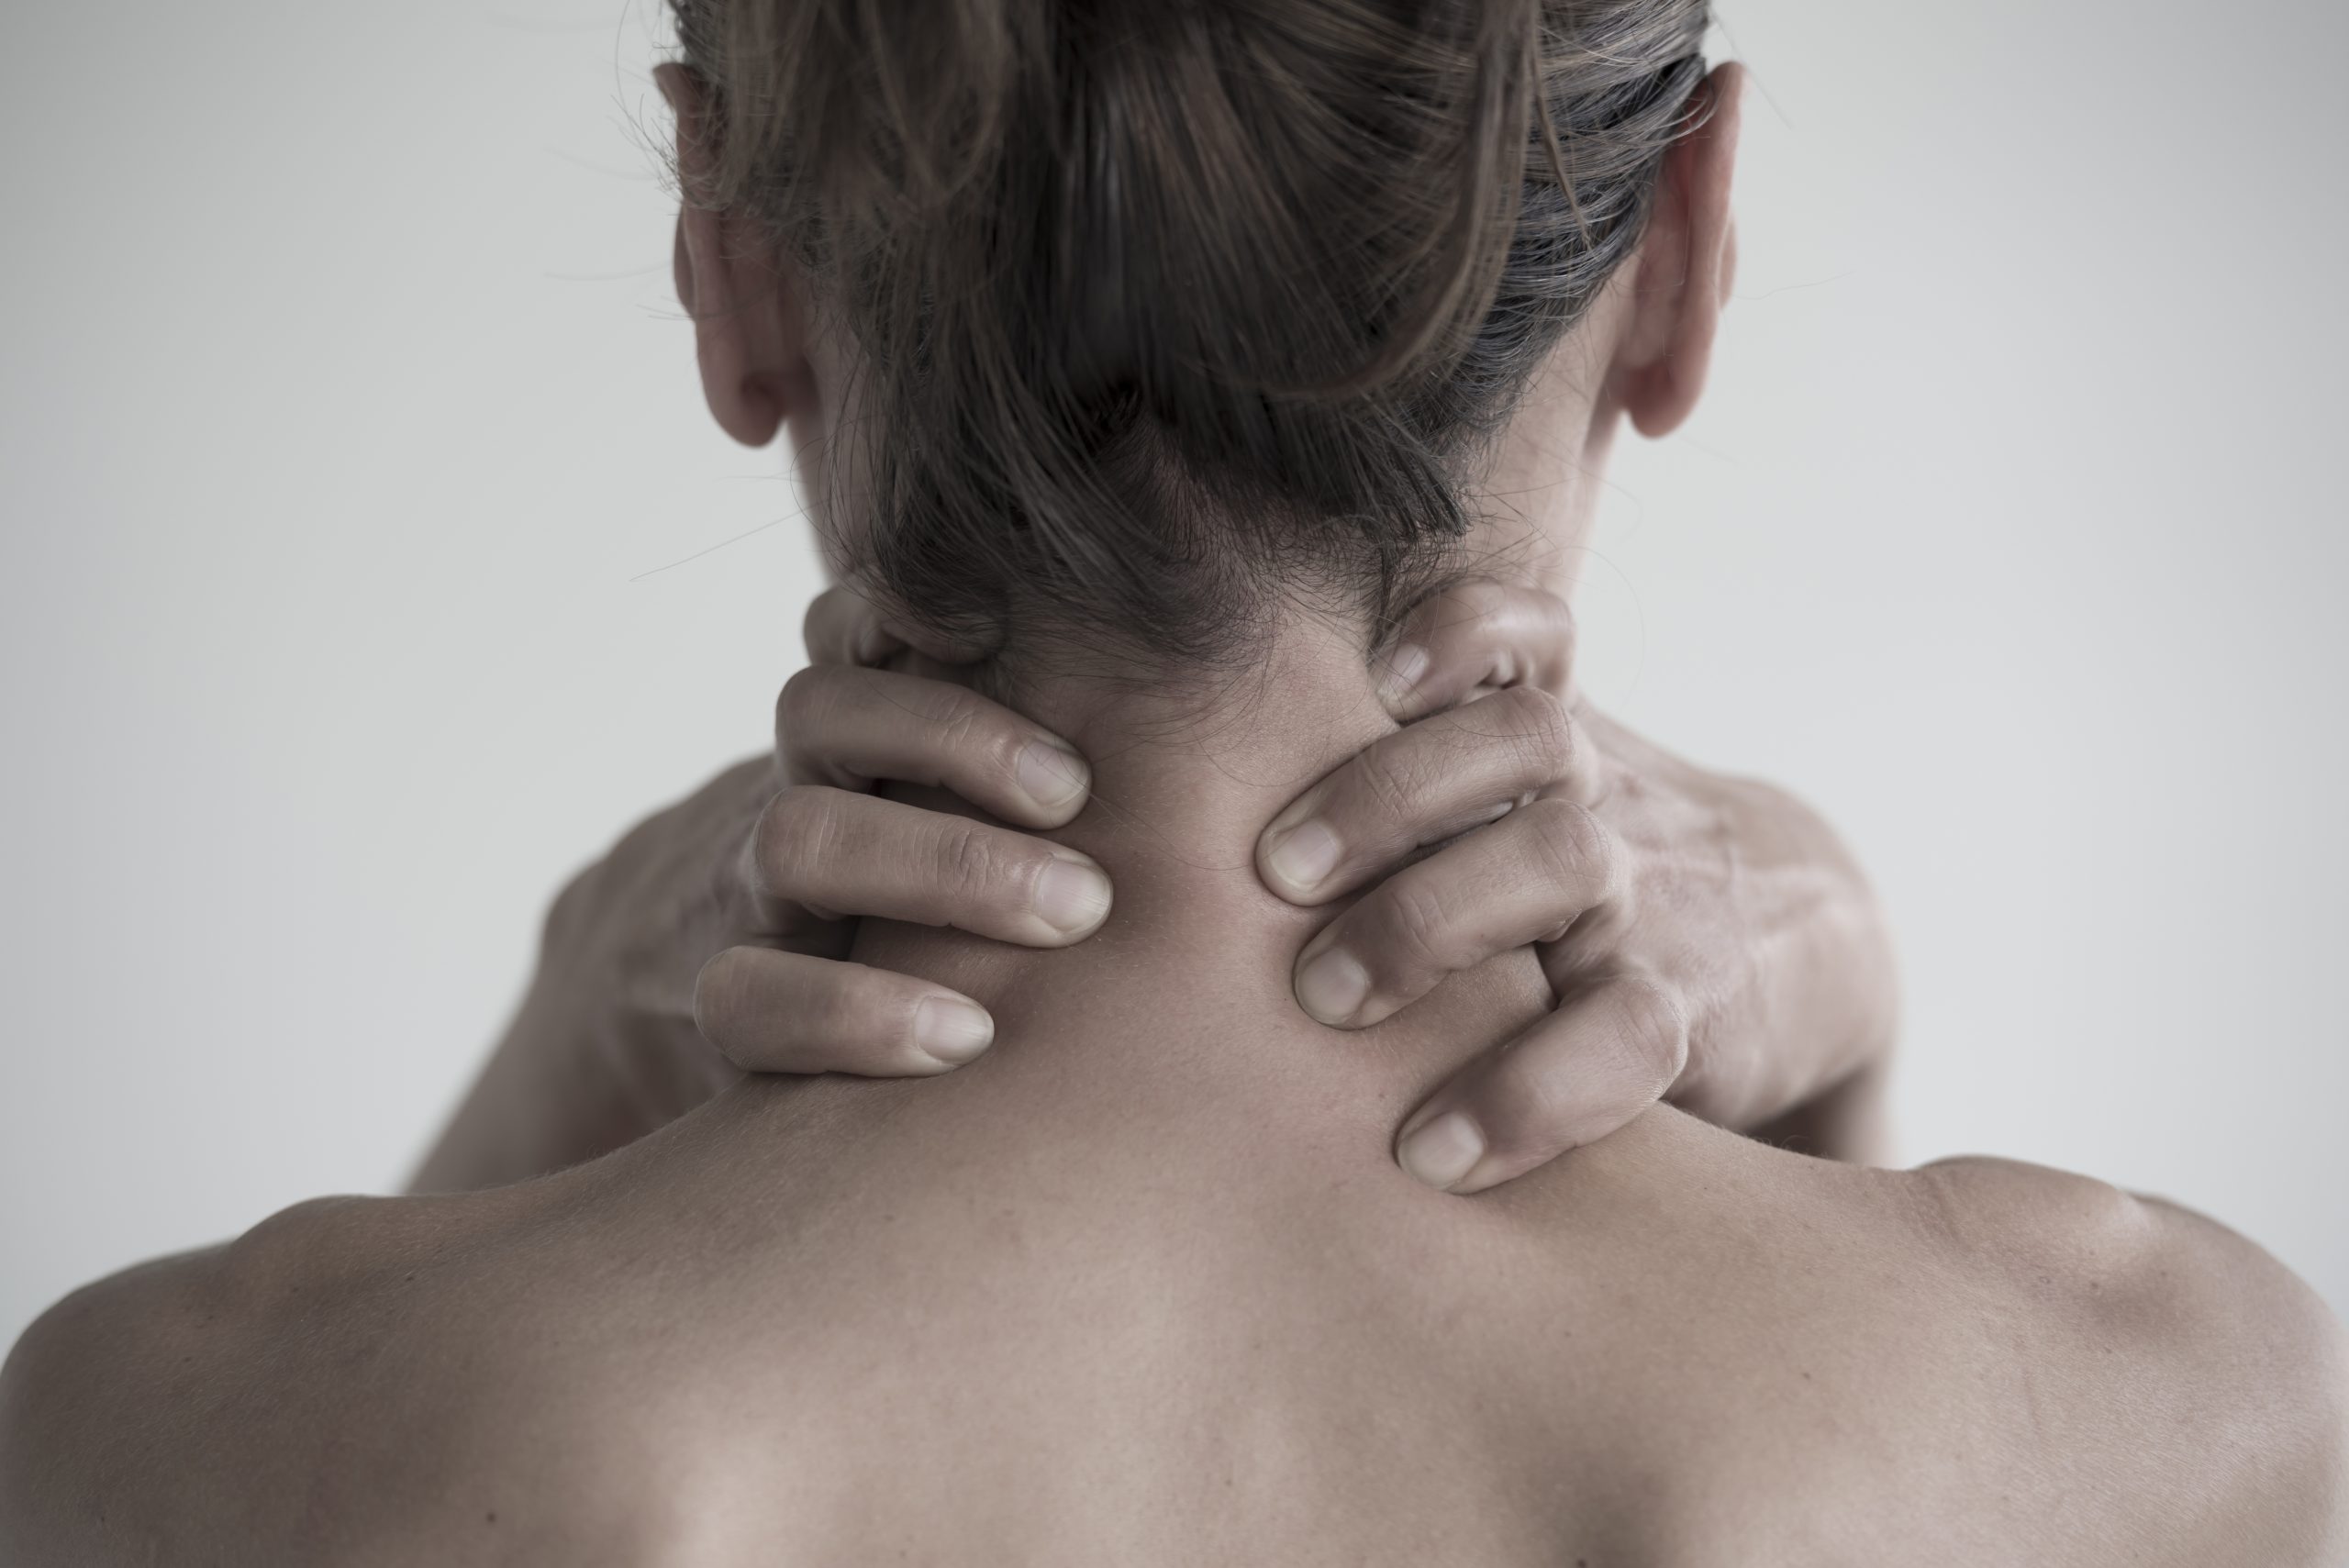 female having neck pain